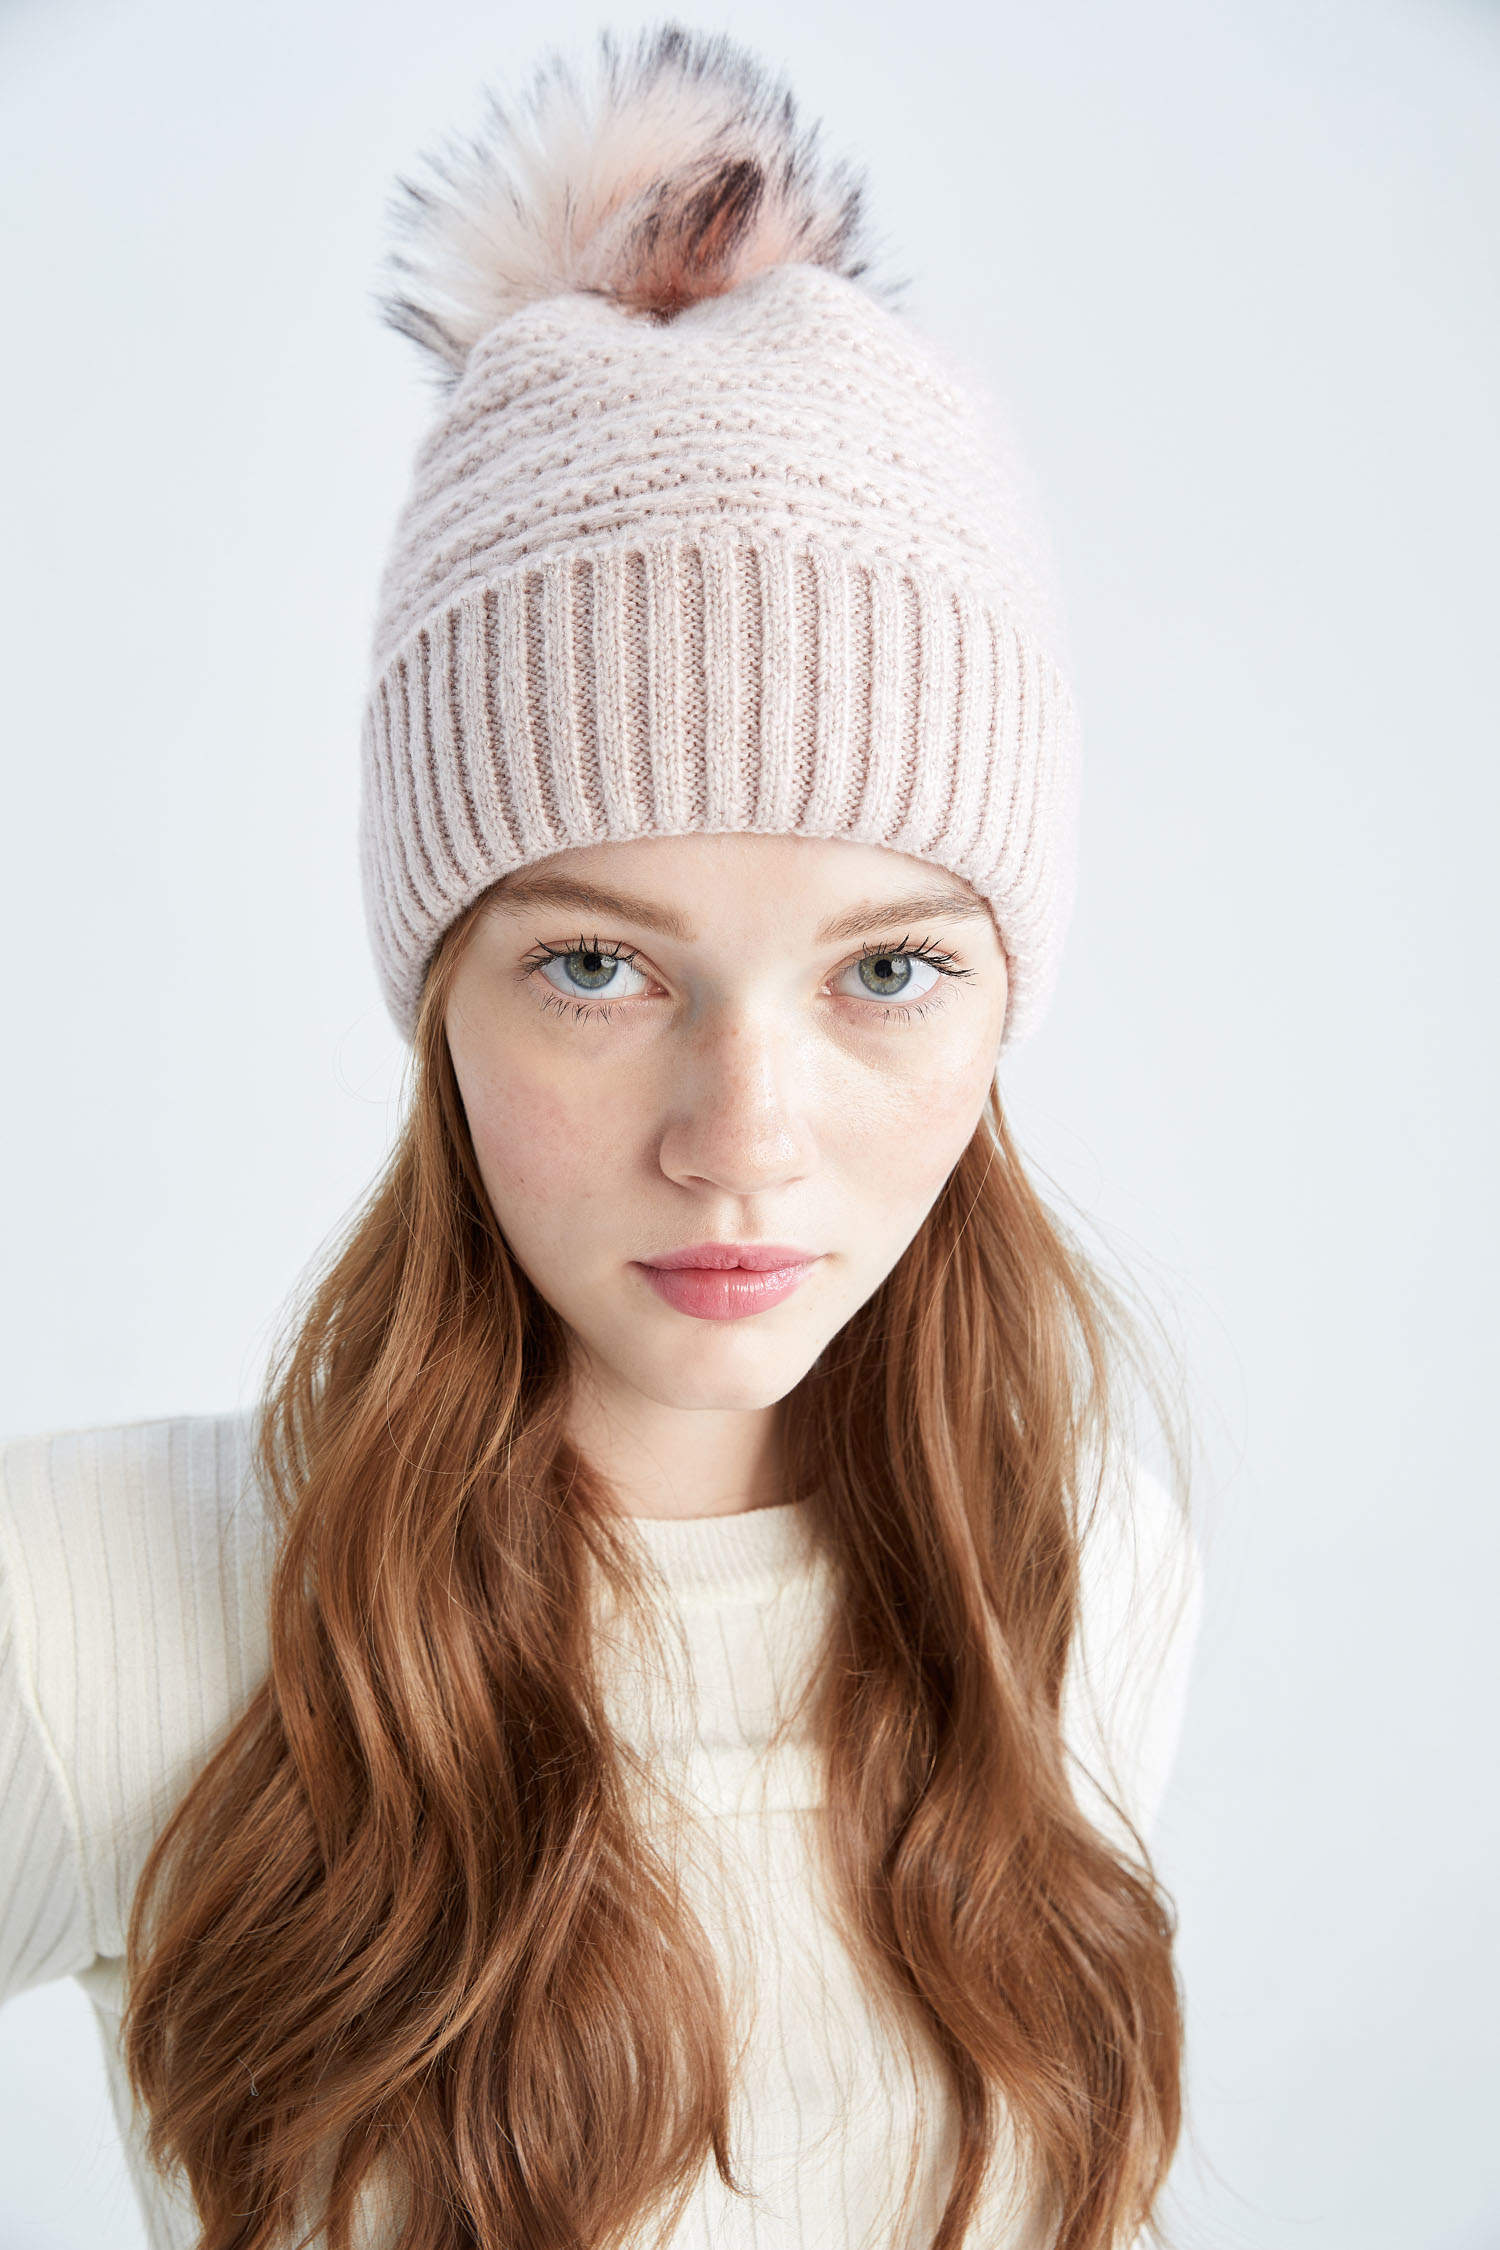 Bonnet femme rose tricote français - Le Drapo Reference : 2832